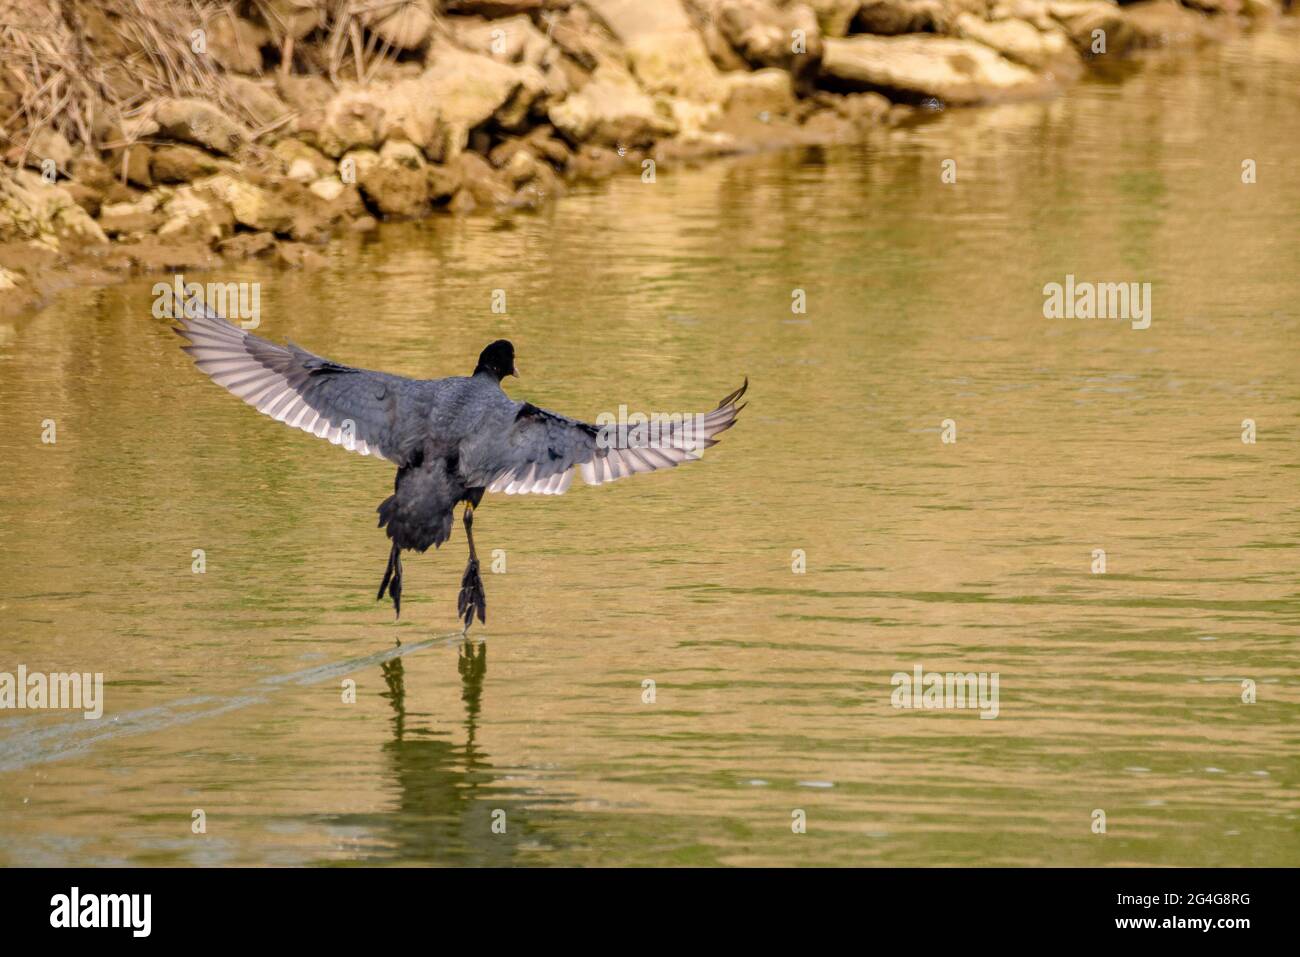 Canard volant dans un canal de drainage du delta de l'Ebro (Tarragone, Catalogne, Espagne) ESP: Un pato volando en un canal de desague del Delta del Ebro Banque D'Images